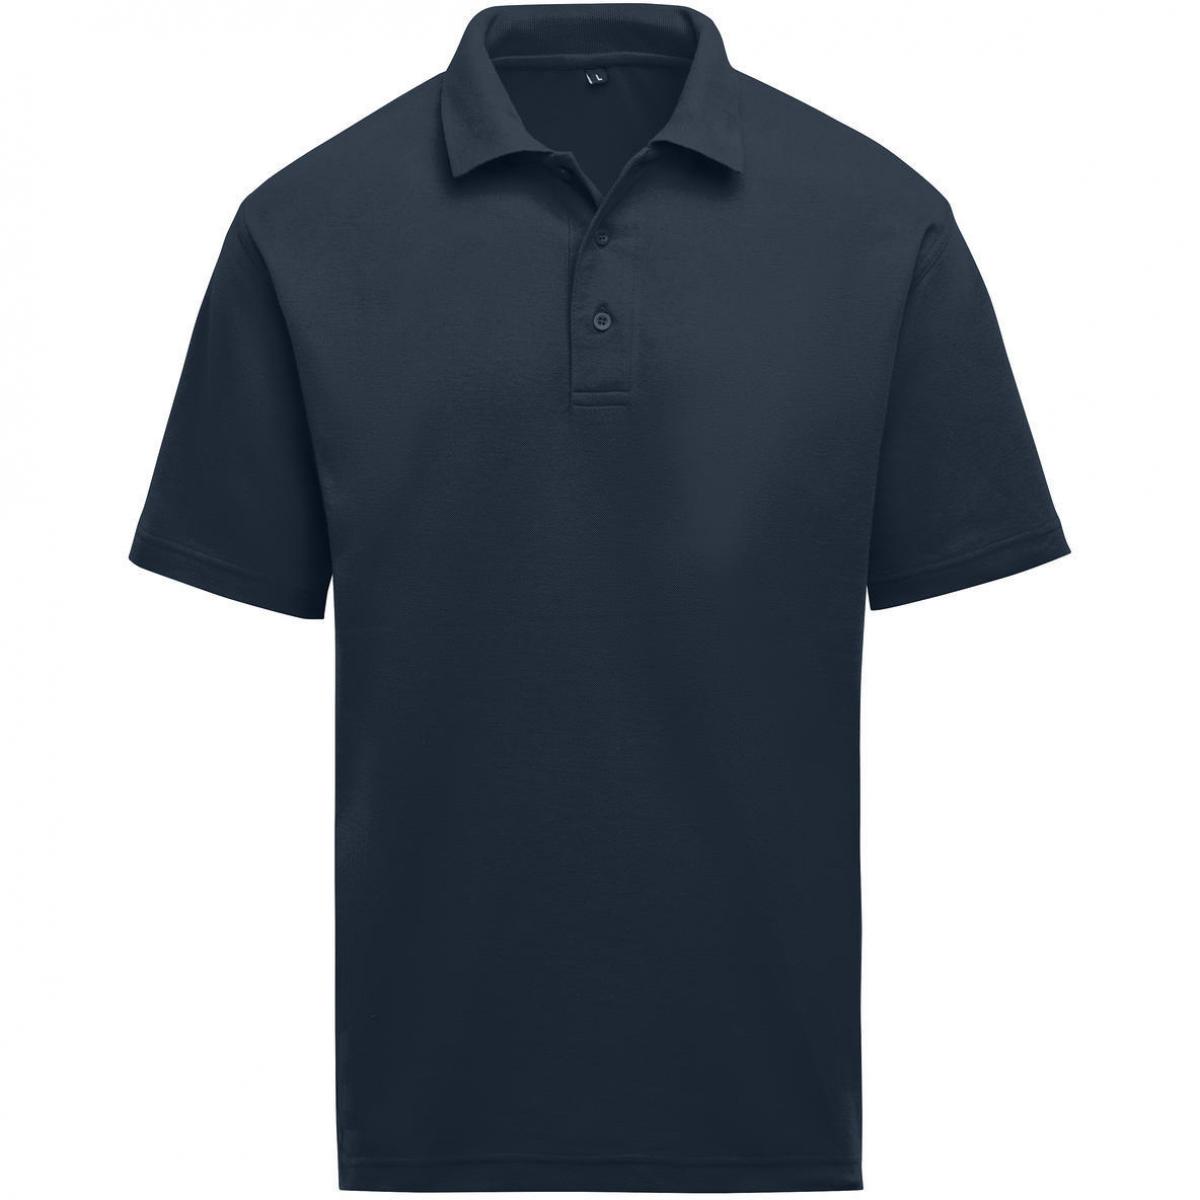 Hersteller: SG Herstellernummer: SGE501 Artikelbezeichnung: Unisex Poloshirt - Workwear - 60°C waschbar Farbe: Navy